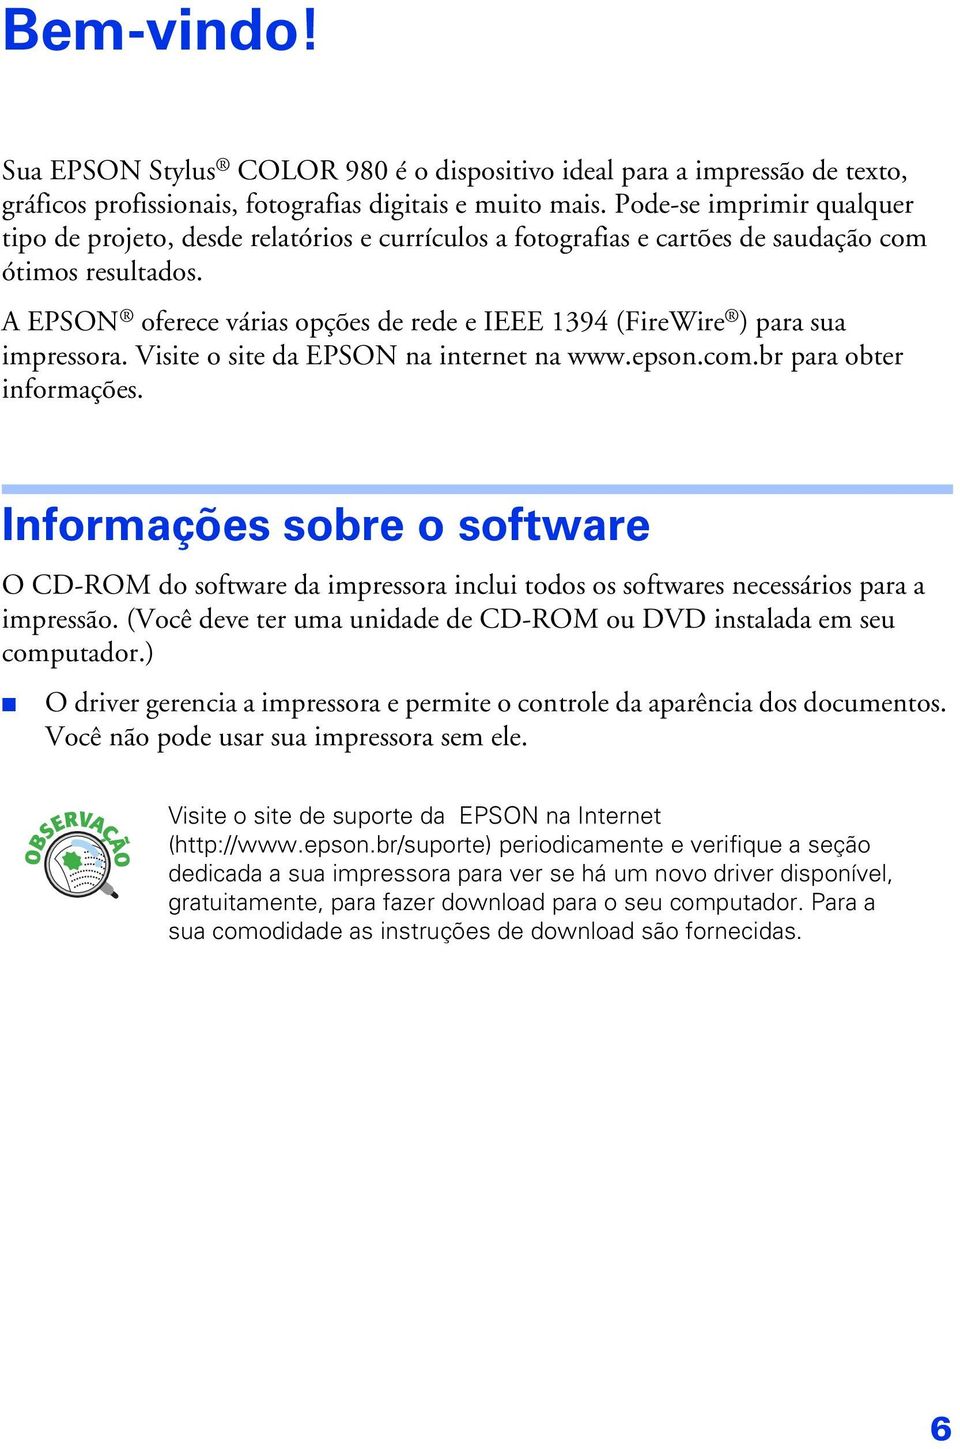 A EPSON oferece várias opções de rede e IEEE 1394 (FireWire ) para sua impressora. Visite o site da EPSON na internet na www.epson.com.br para obter informações.